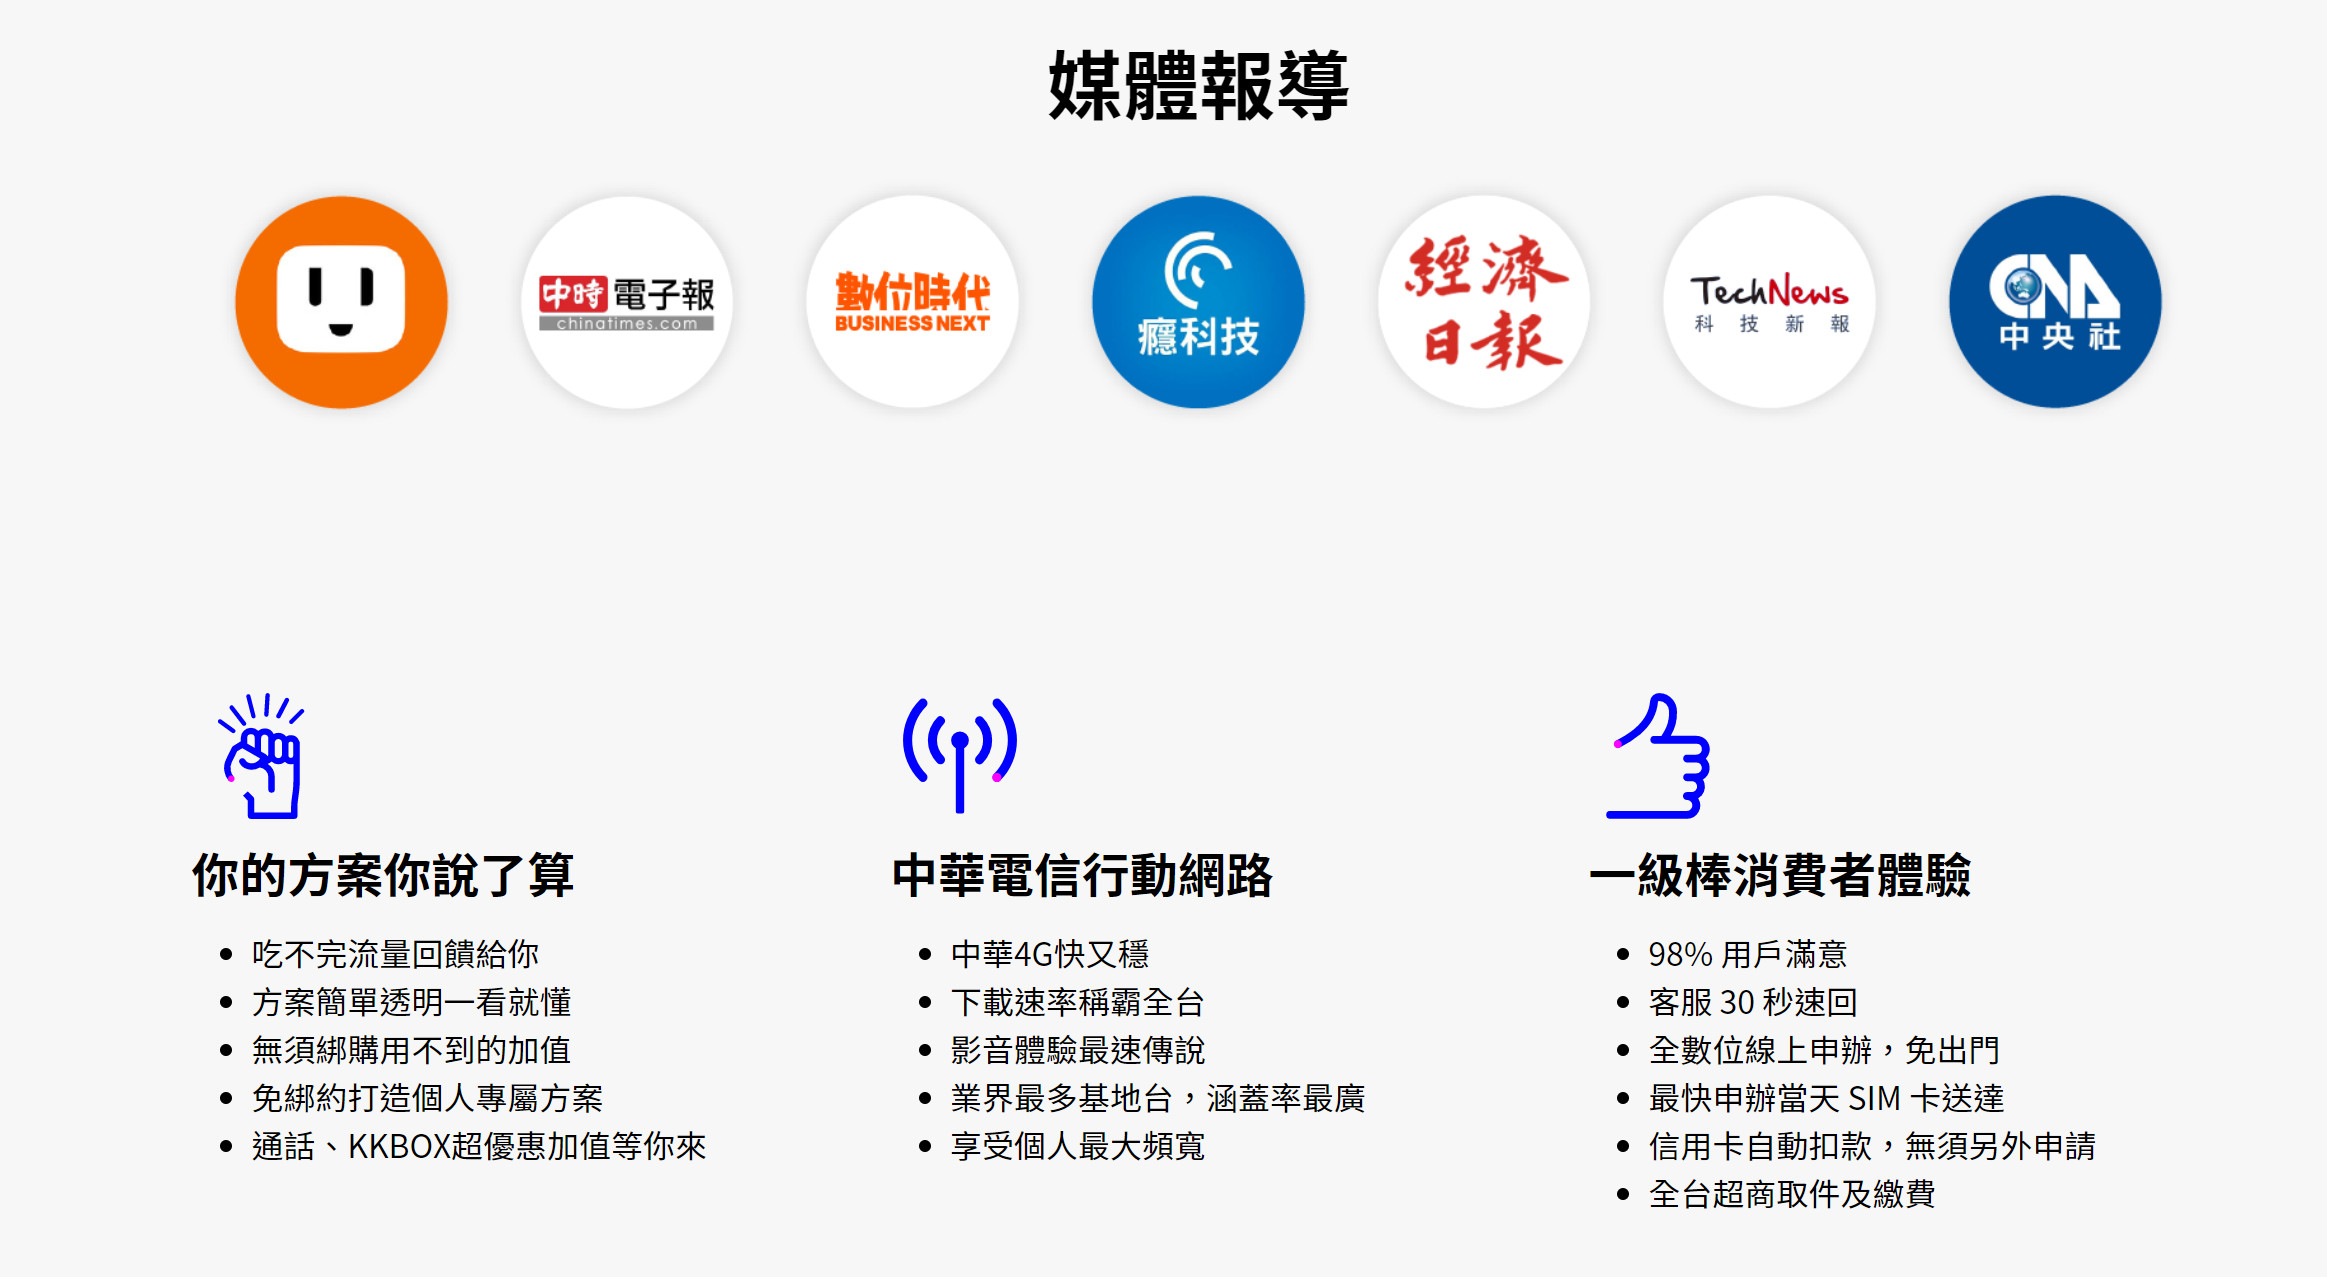 【無框行動】新春專案，中華電信大4G網路吃到飽466元，低流量只要166元!超適合搭配台灣之星雙11專案。 - 無框行動ptt - 敗家達人推薦